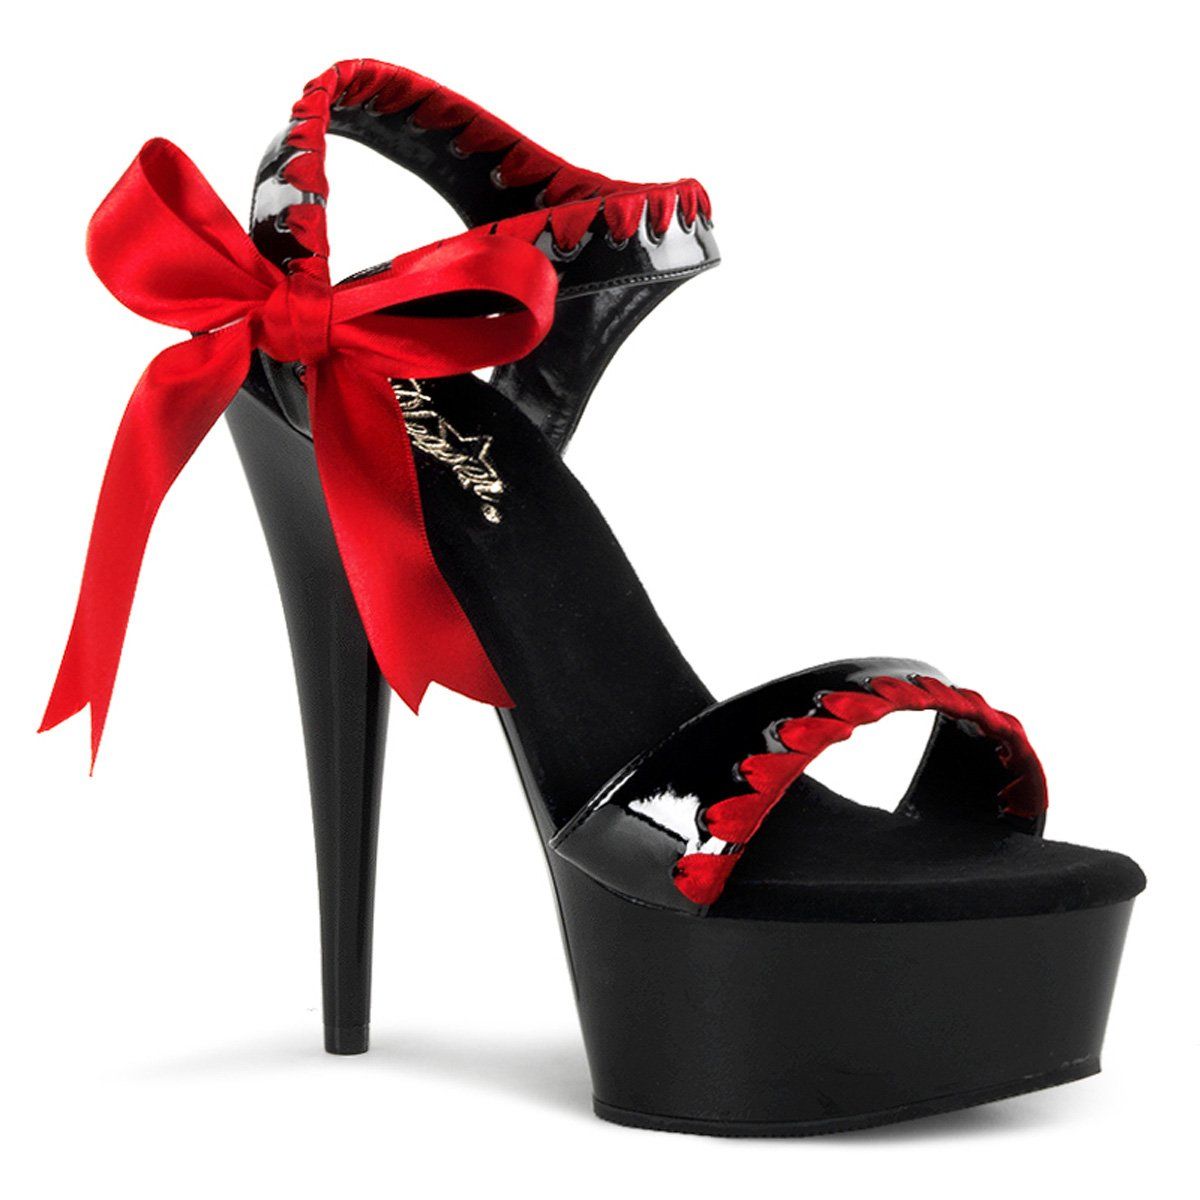 DELIGHT-615 Black-Red/Black Platform Sandal Pleaser